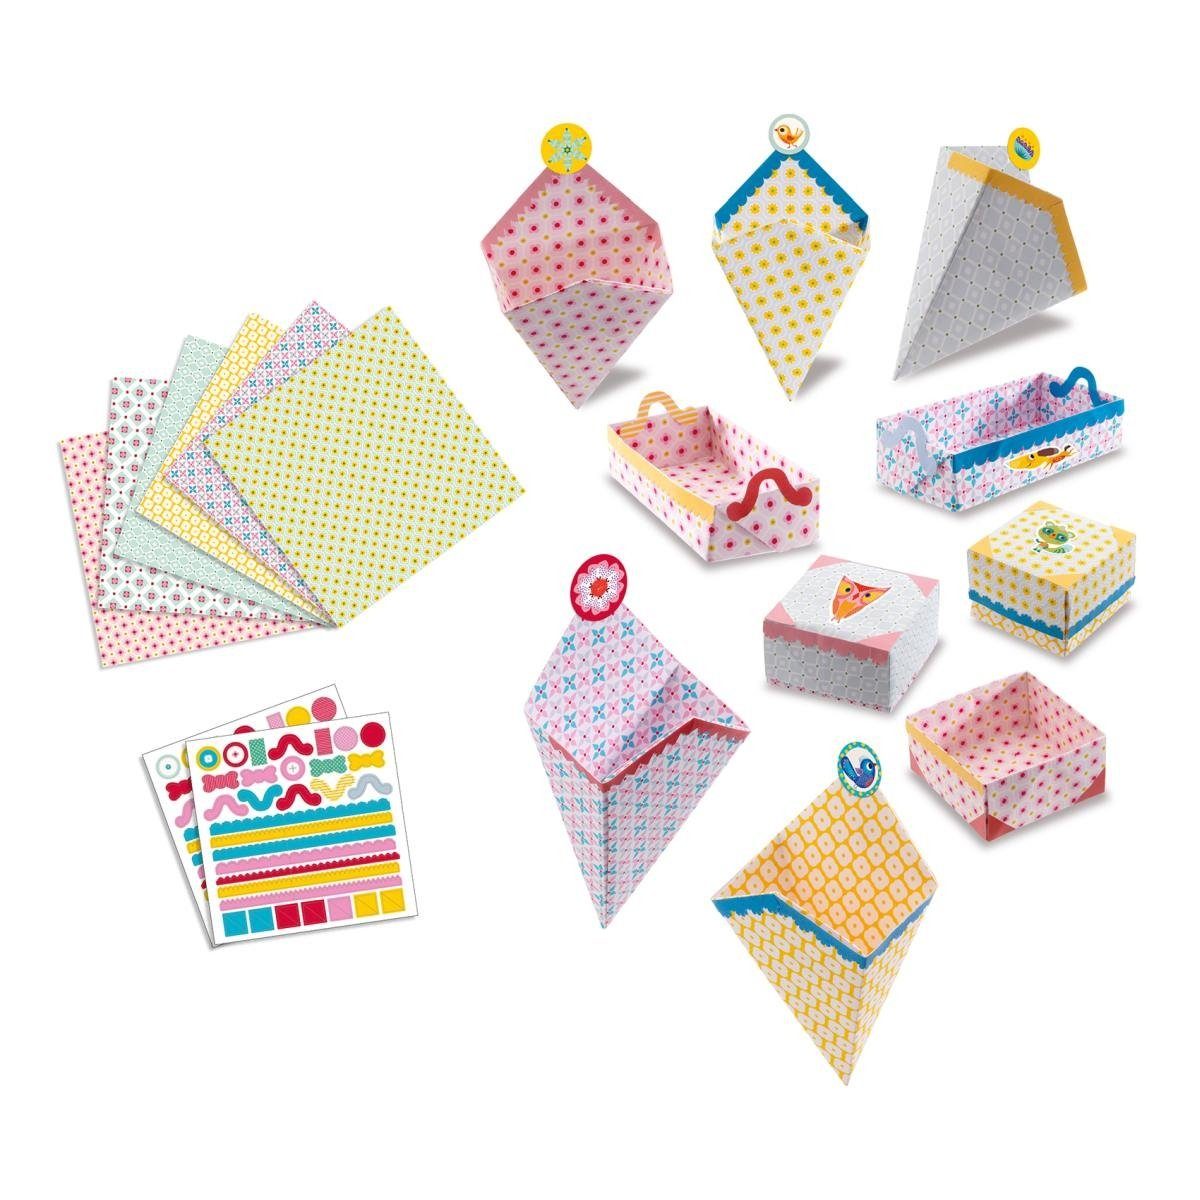 DJECO Kreativset Origami-Bögen 105 24 Origami Geschenkboxen Kleine Aufkleber